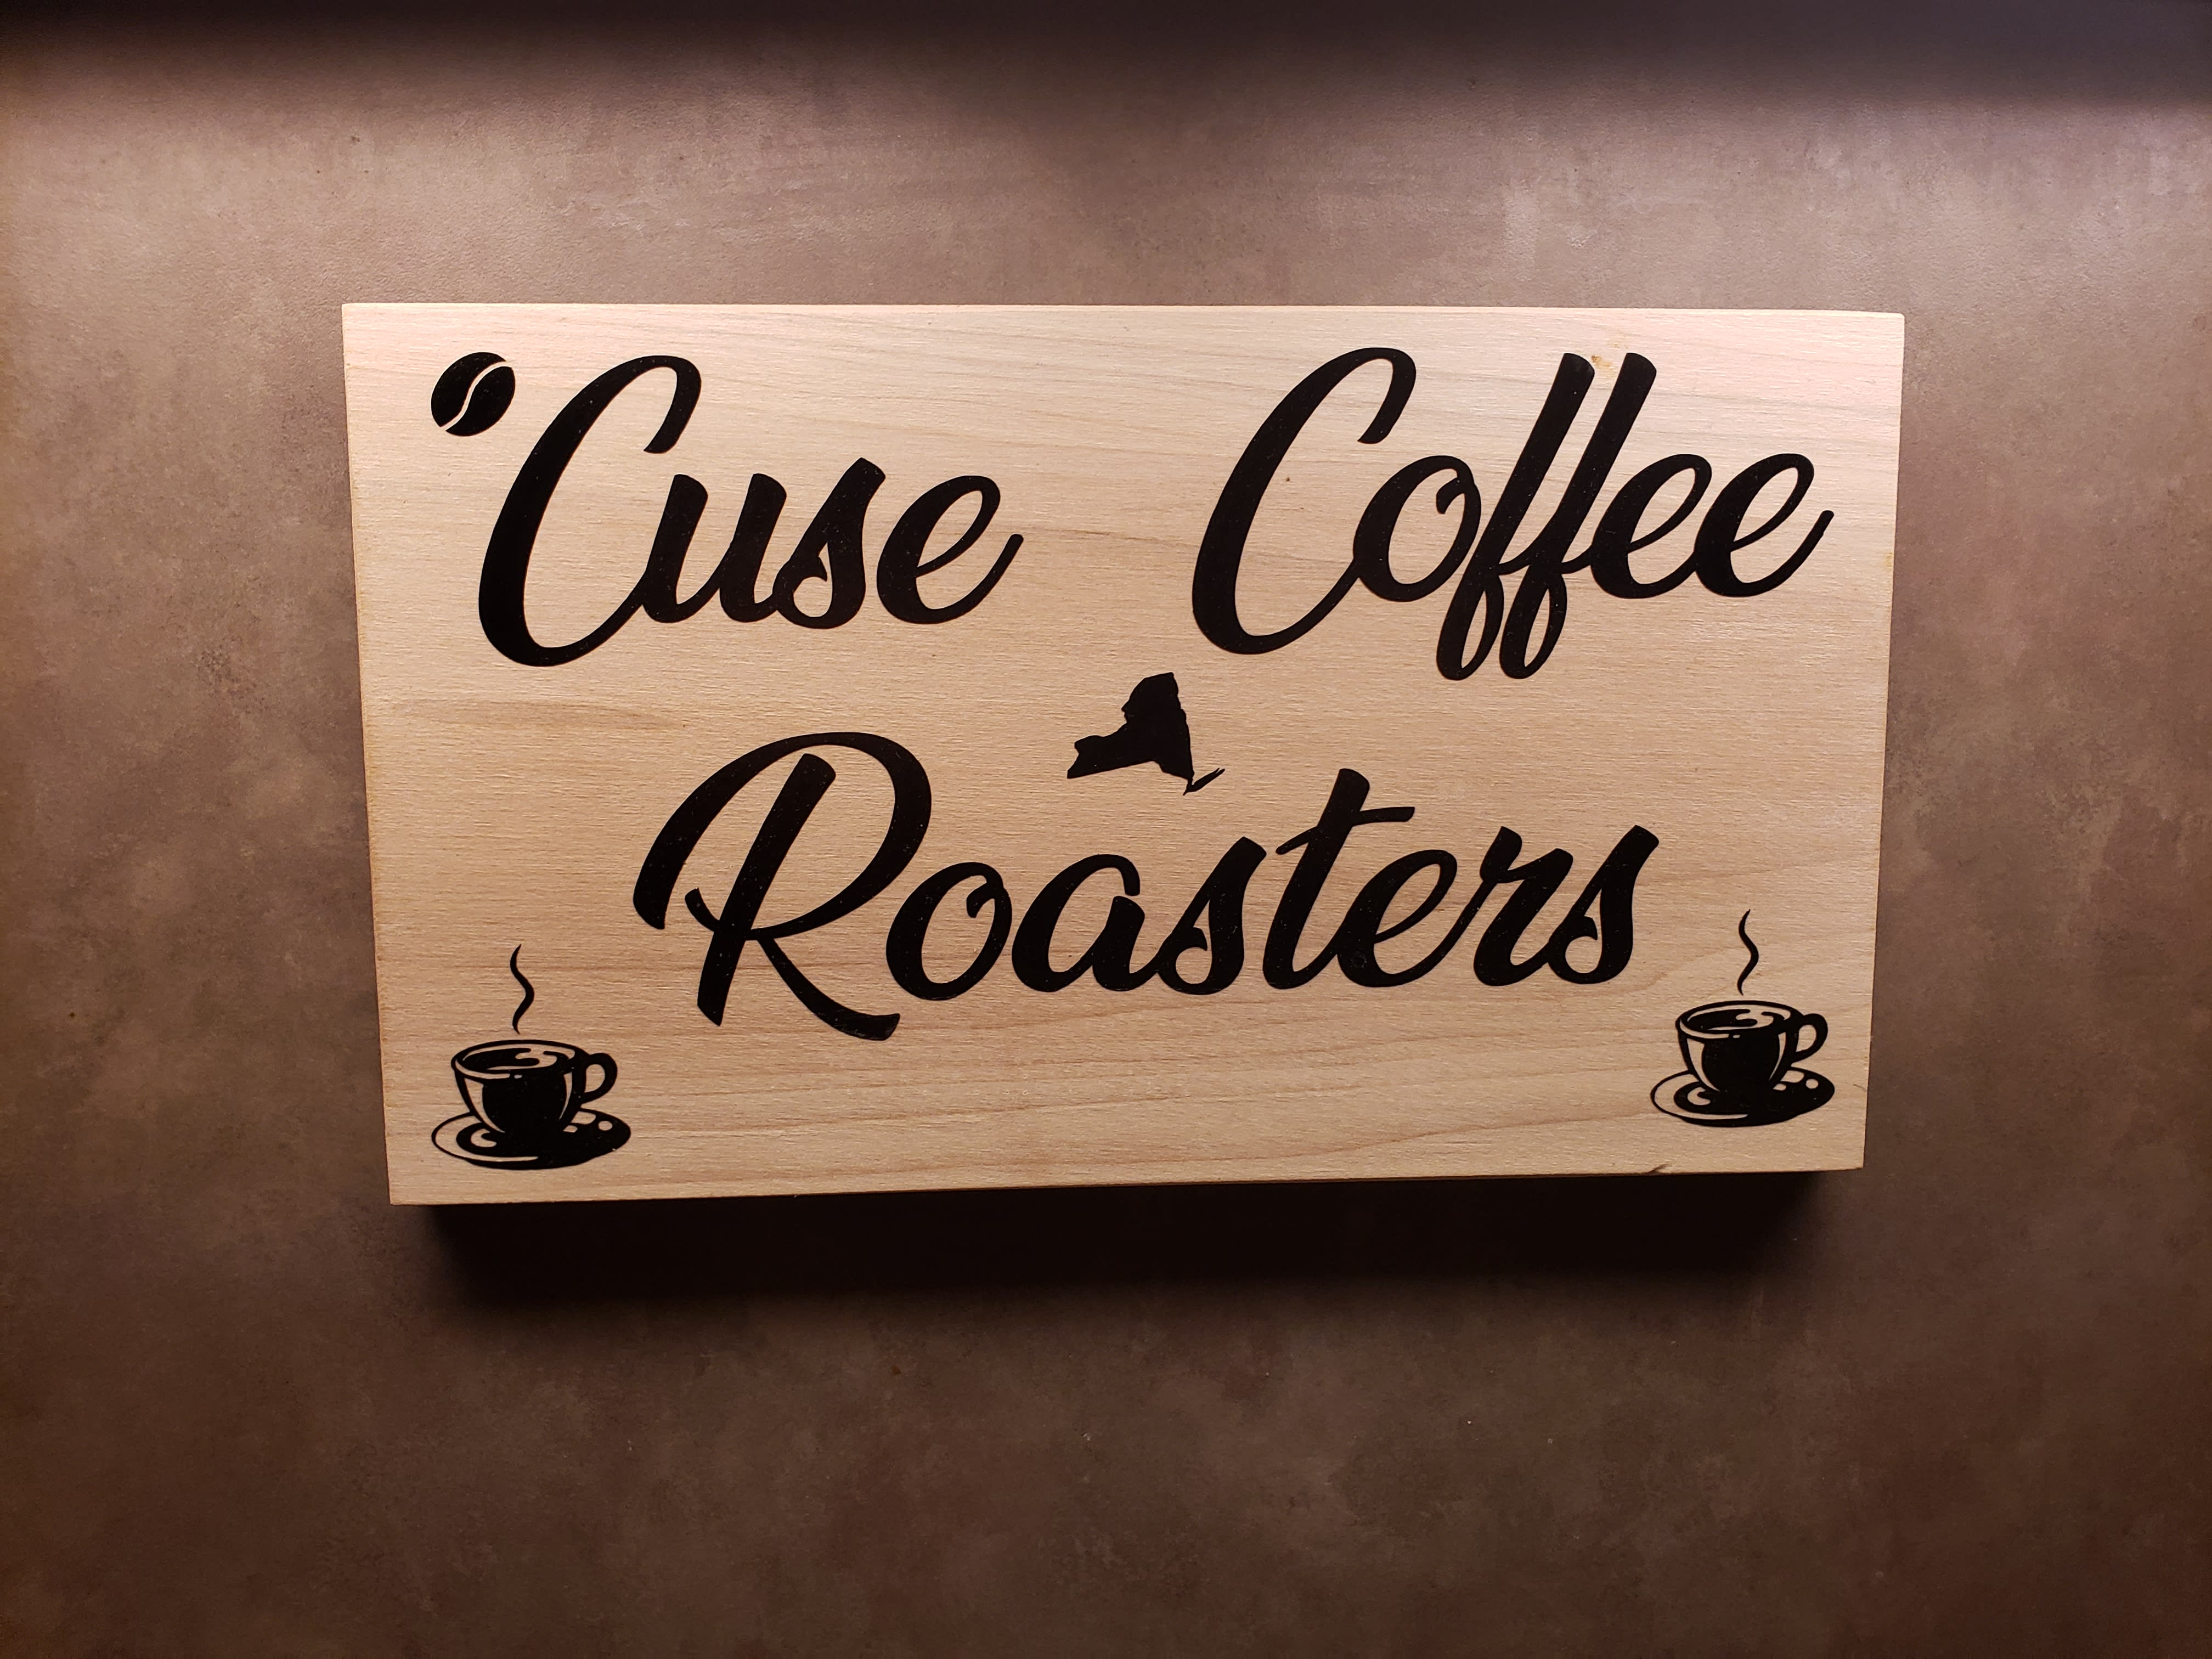 Cuse Coffee Roasters